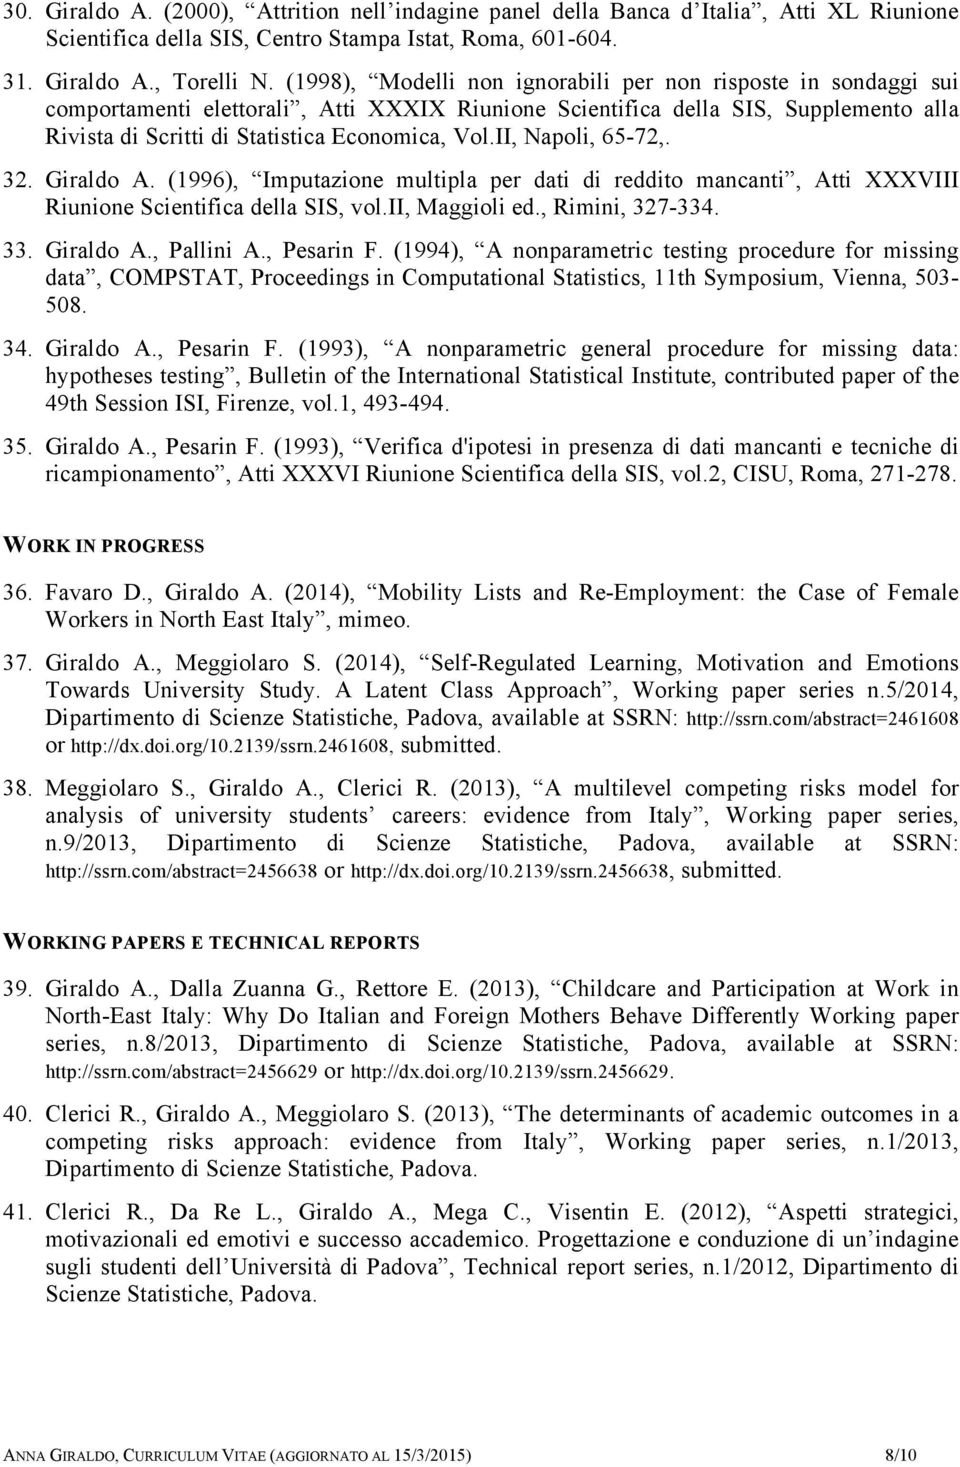 II, Napoli, 65-72,. 32. Giraldo A. (1996), Imputazione multipla per dati di reddito mancanti, Atti XXXVIII Riunione Scientifica della SIS, vol.ii, Maggioli ed., Rimini, 327-334. 33. Giraldo A., Pallini A.